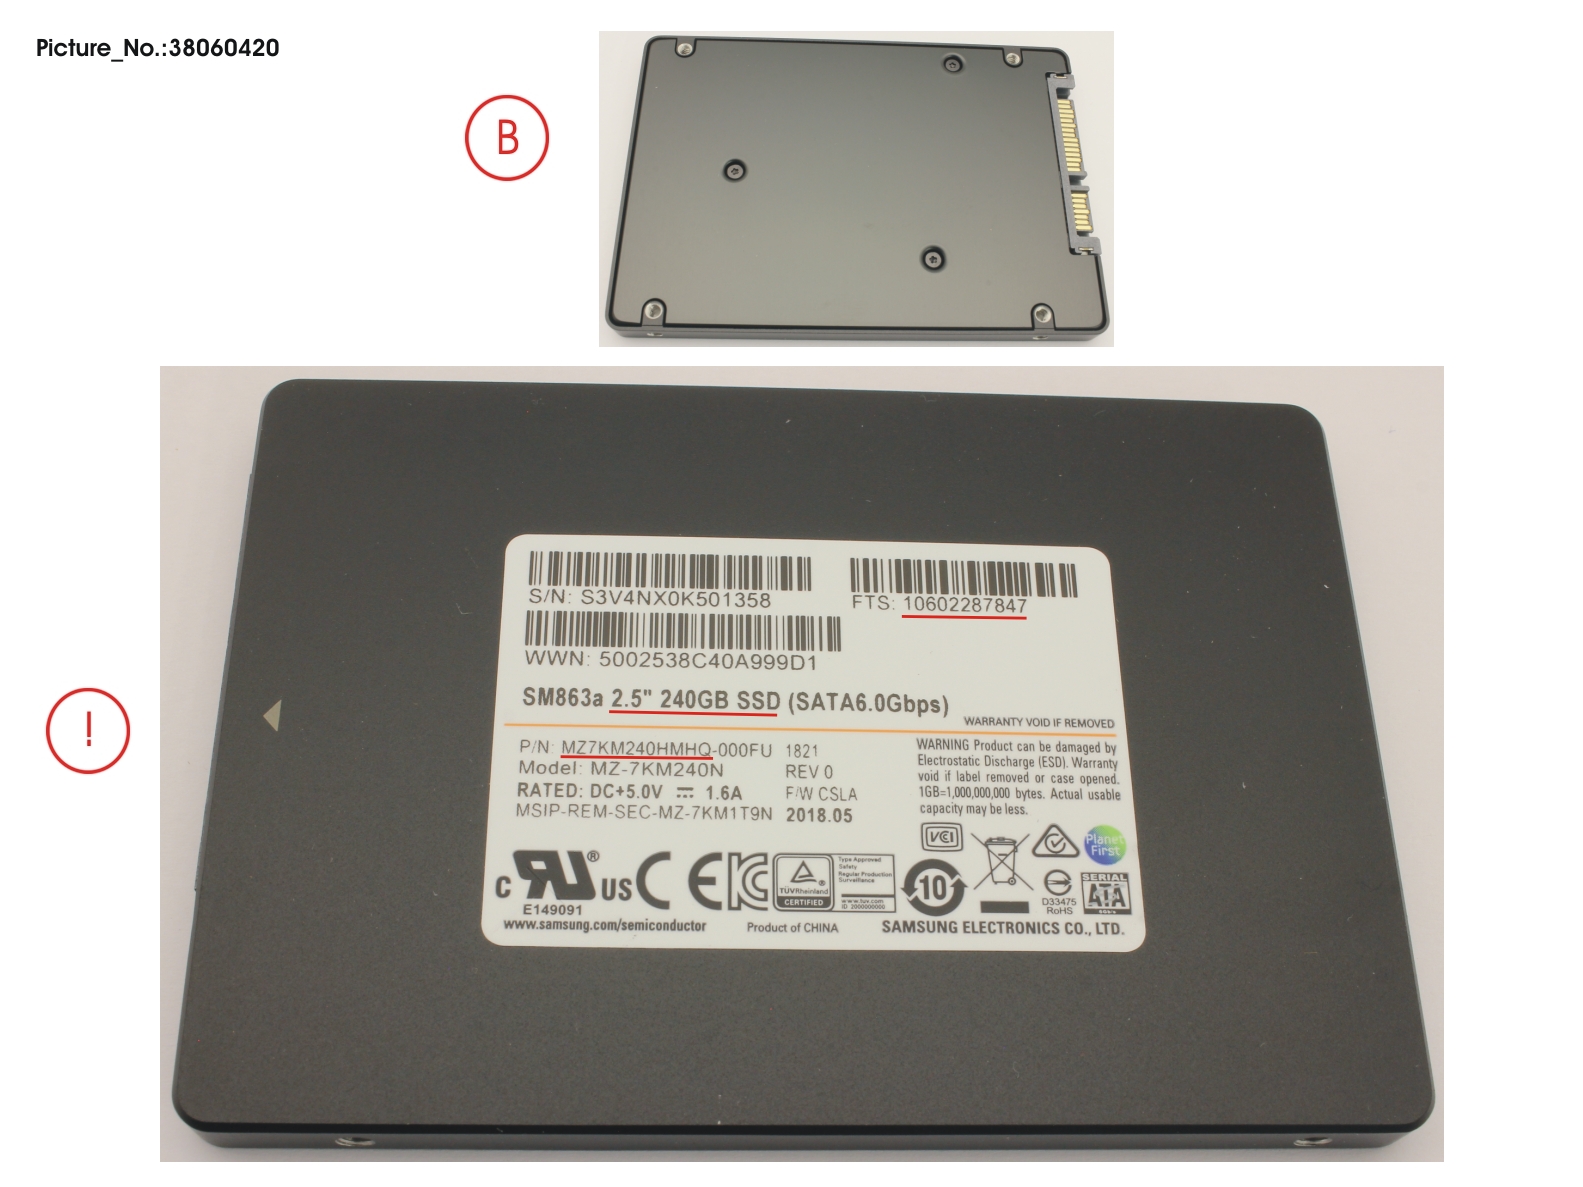 SSD S3 240GB 2.5 SATA (7MM)